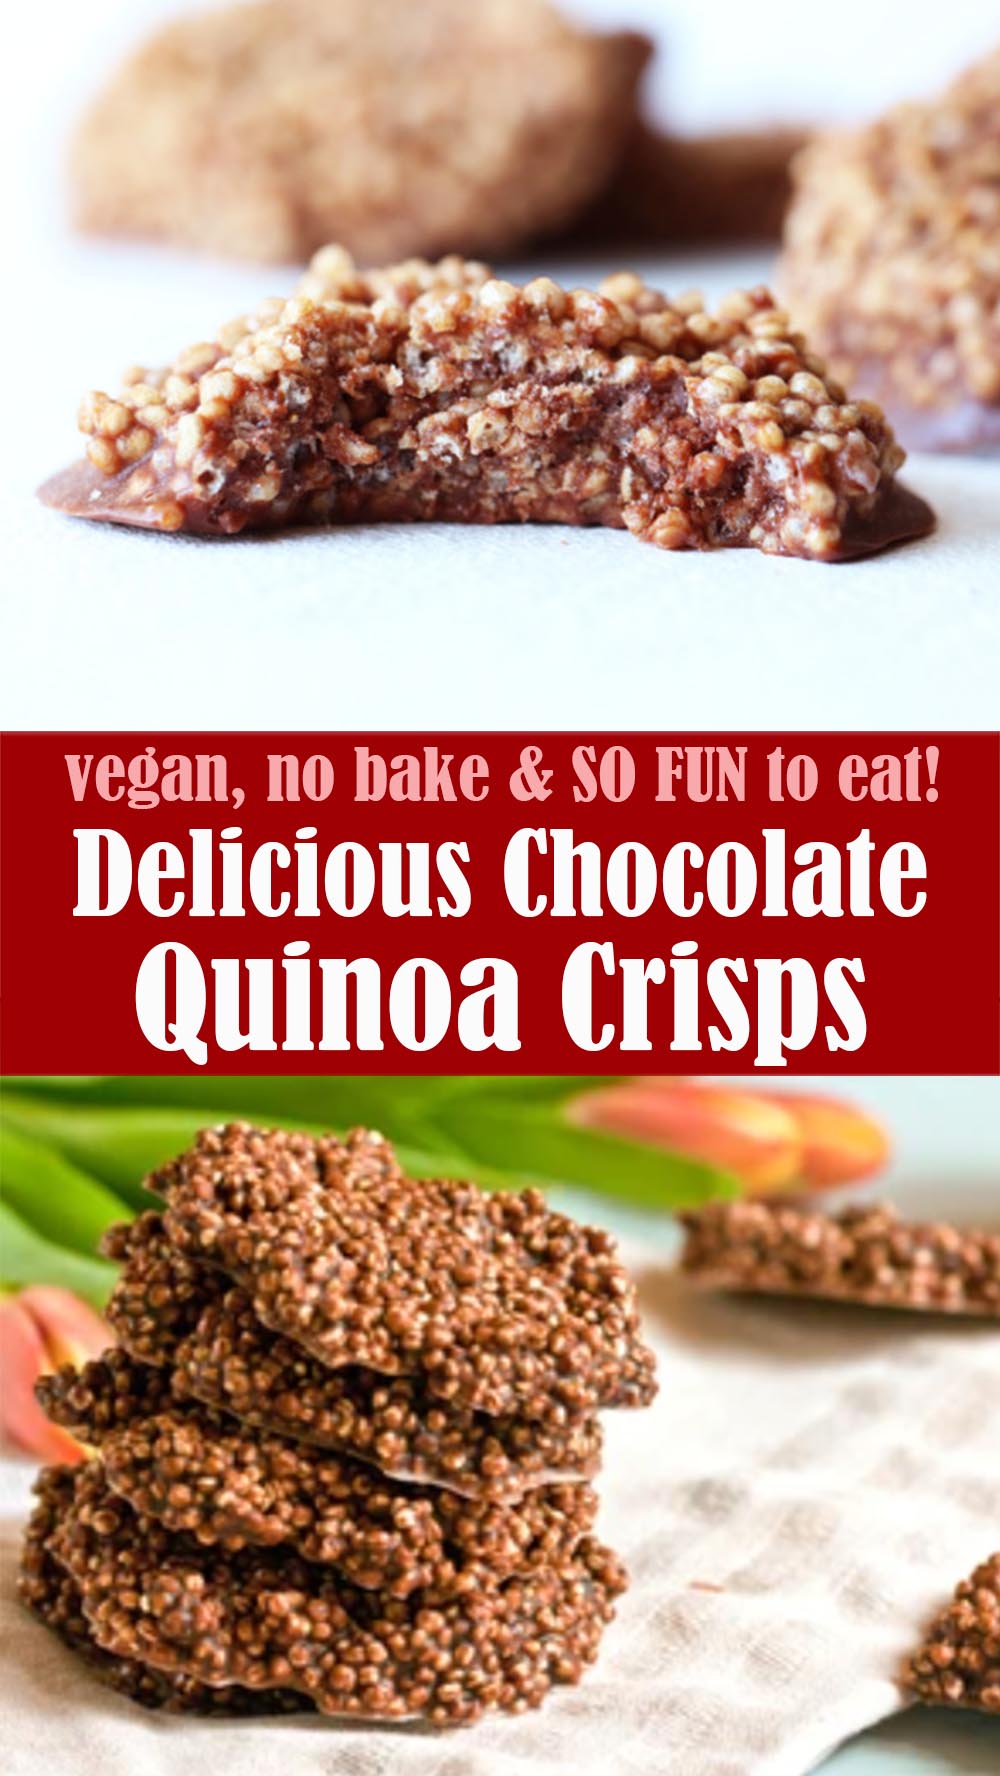 Delicious Chocolate Quinoa Crisps